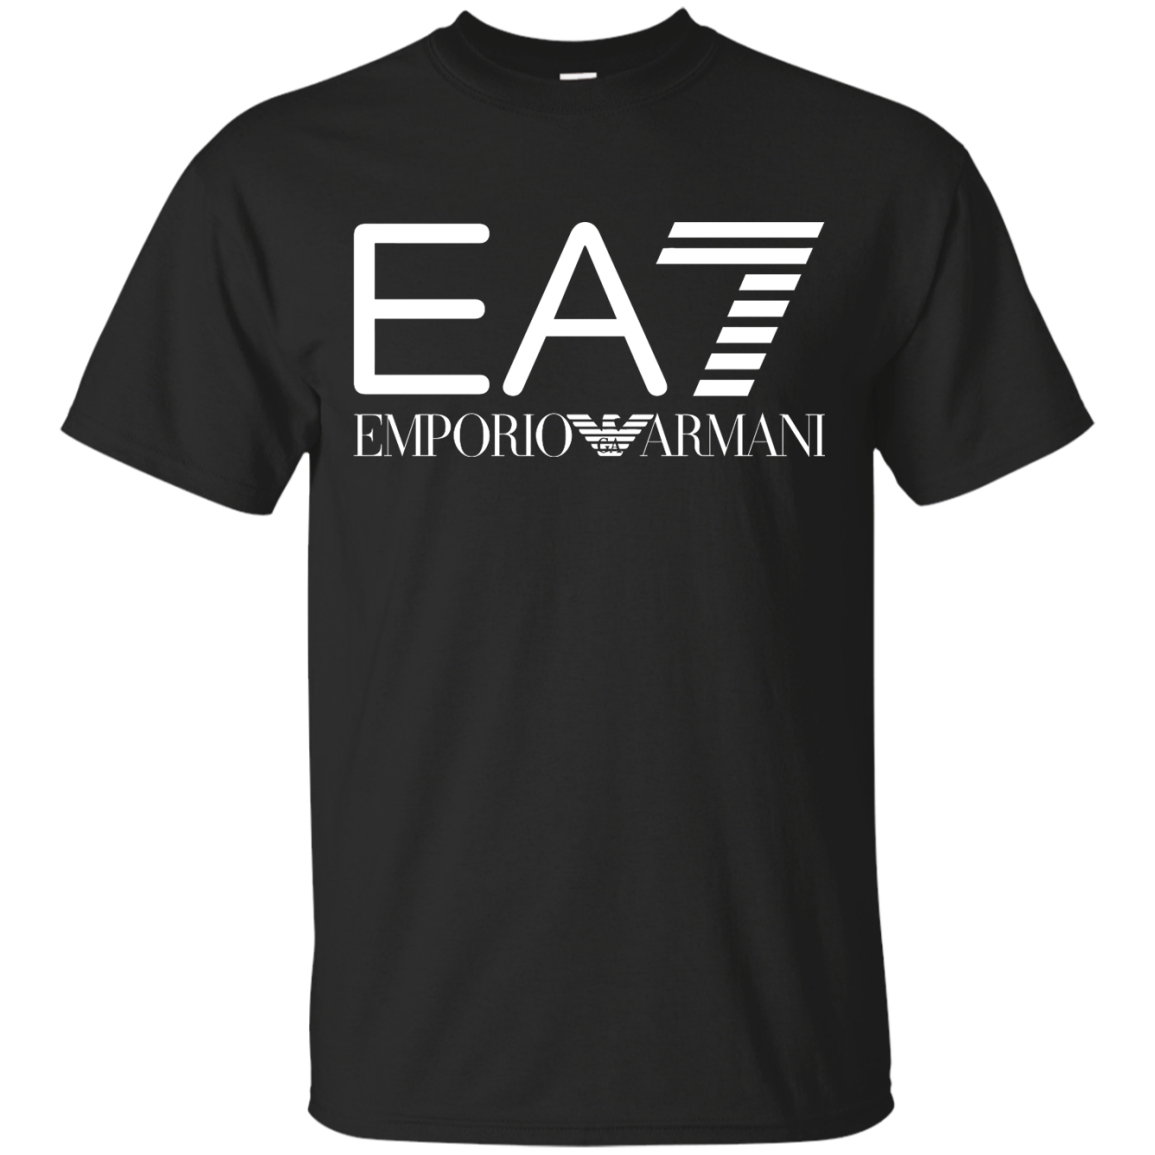 Ea7 Emporio Armani. Футболка ea7 Emporio Armani. Armani ea7 tishrt. Ea7 Emporio Armani t-Shirt-3rtt17tjdzz.